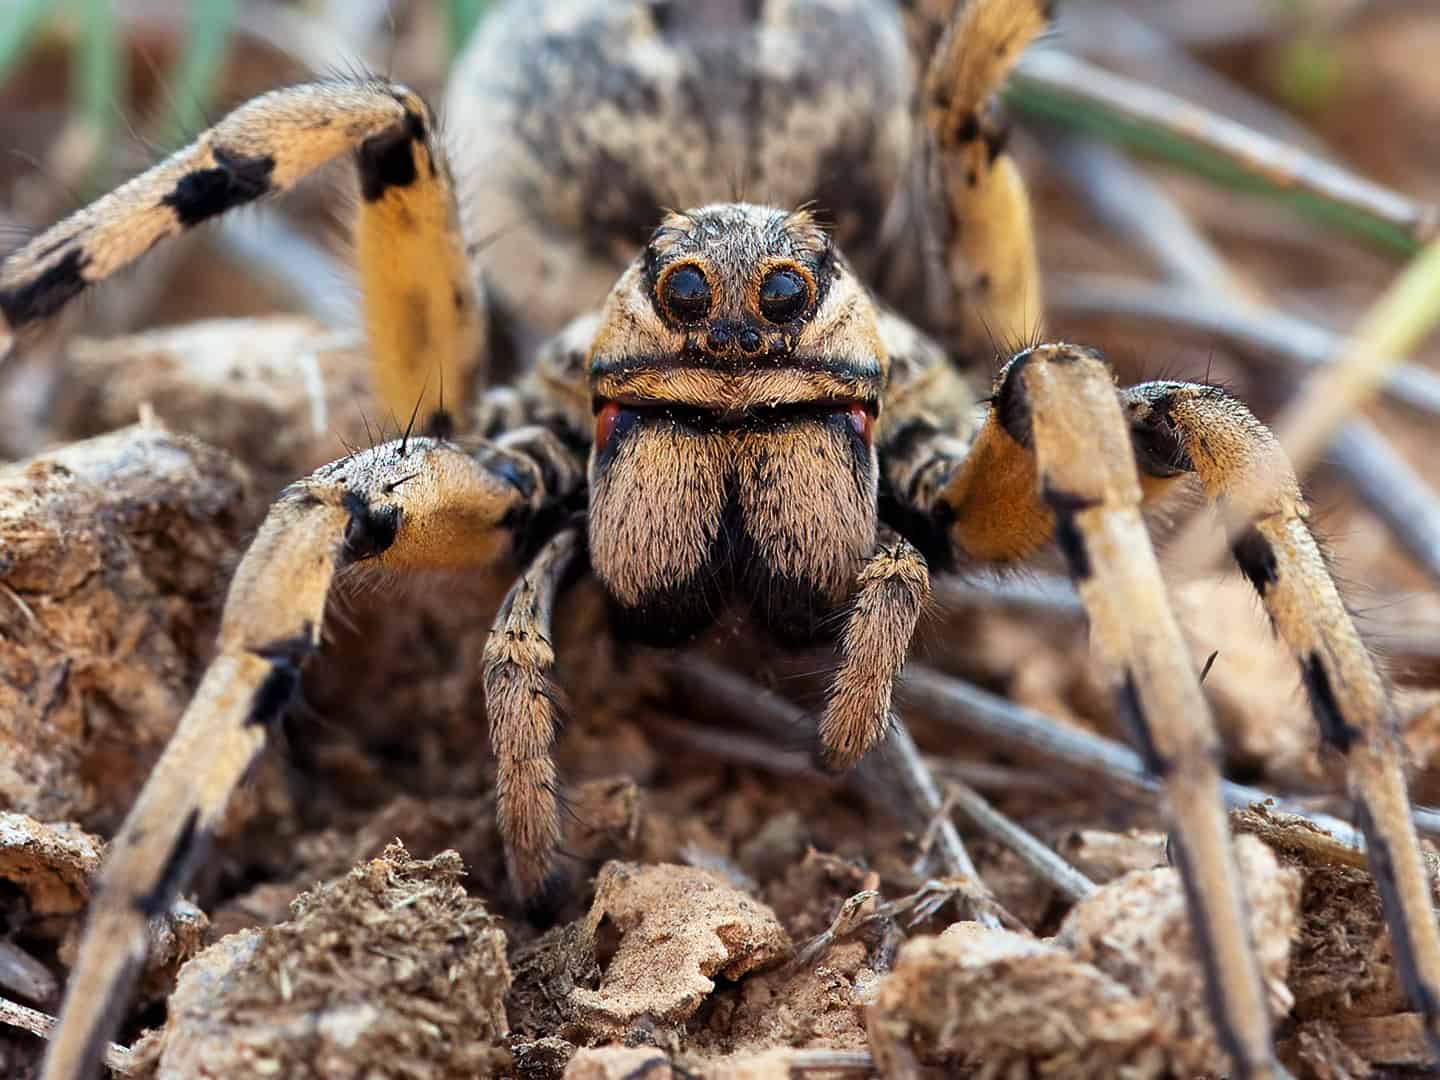 Ook deze Europese tarantula kijkt me hier met meerdere ogen aan.